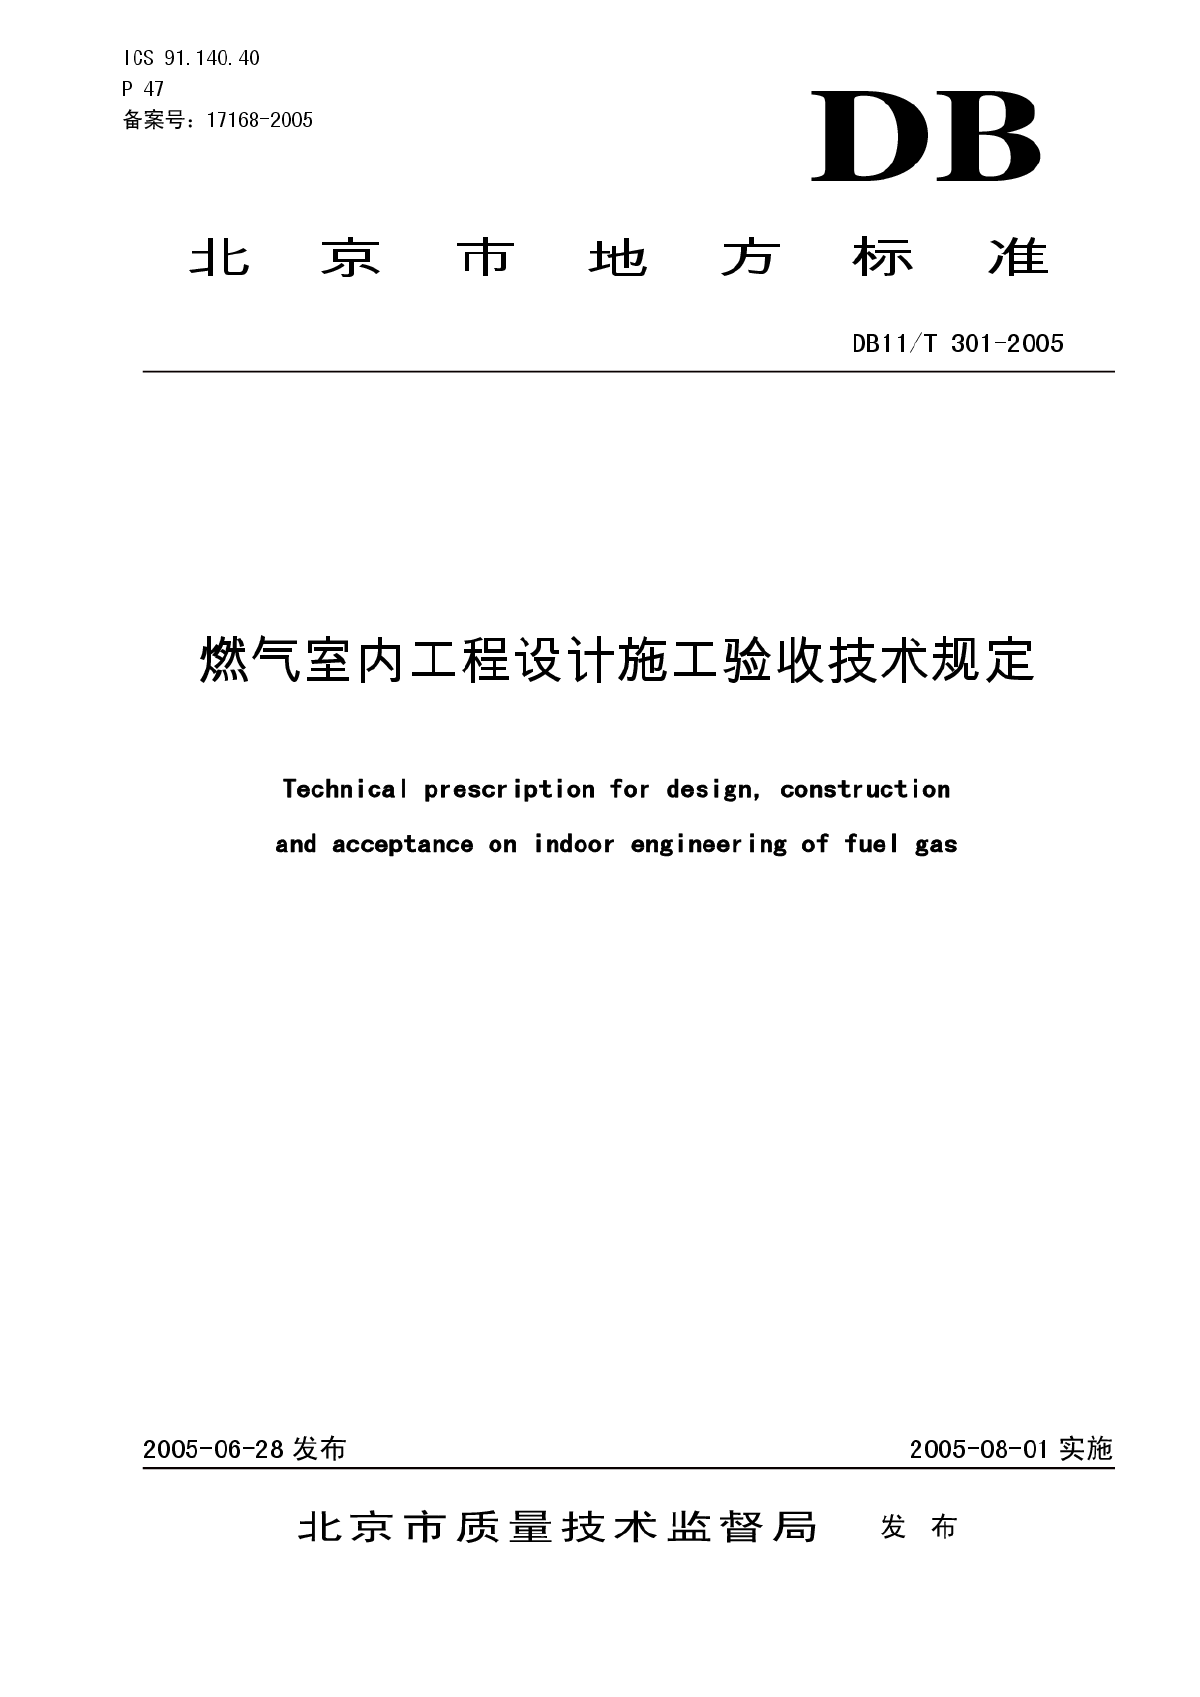 北京市地方标准《燃气室内工程设计施工验收技术规定》DB11/T301-2005-图一